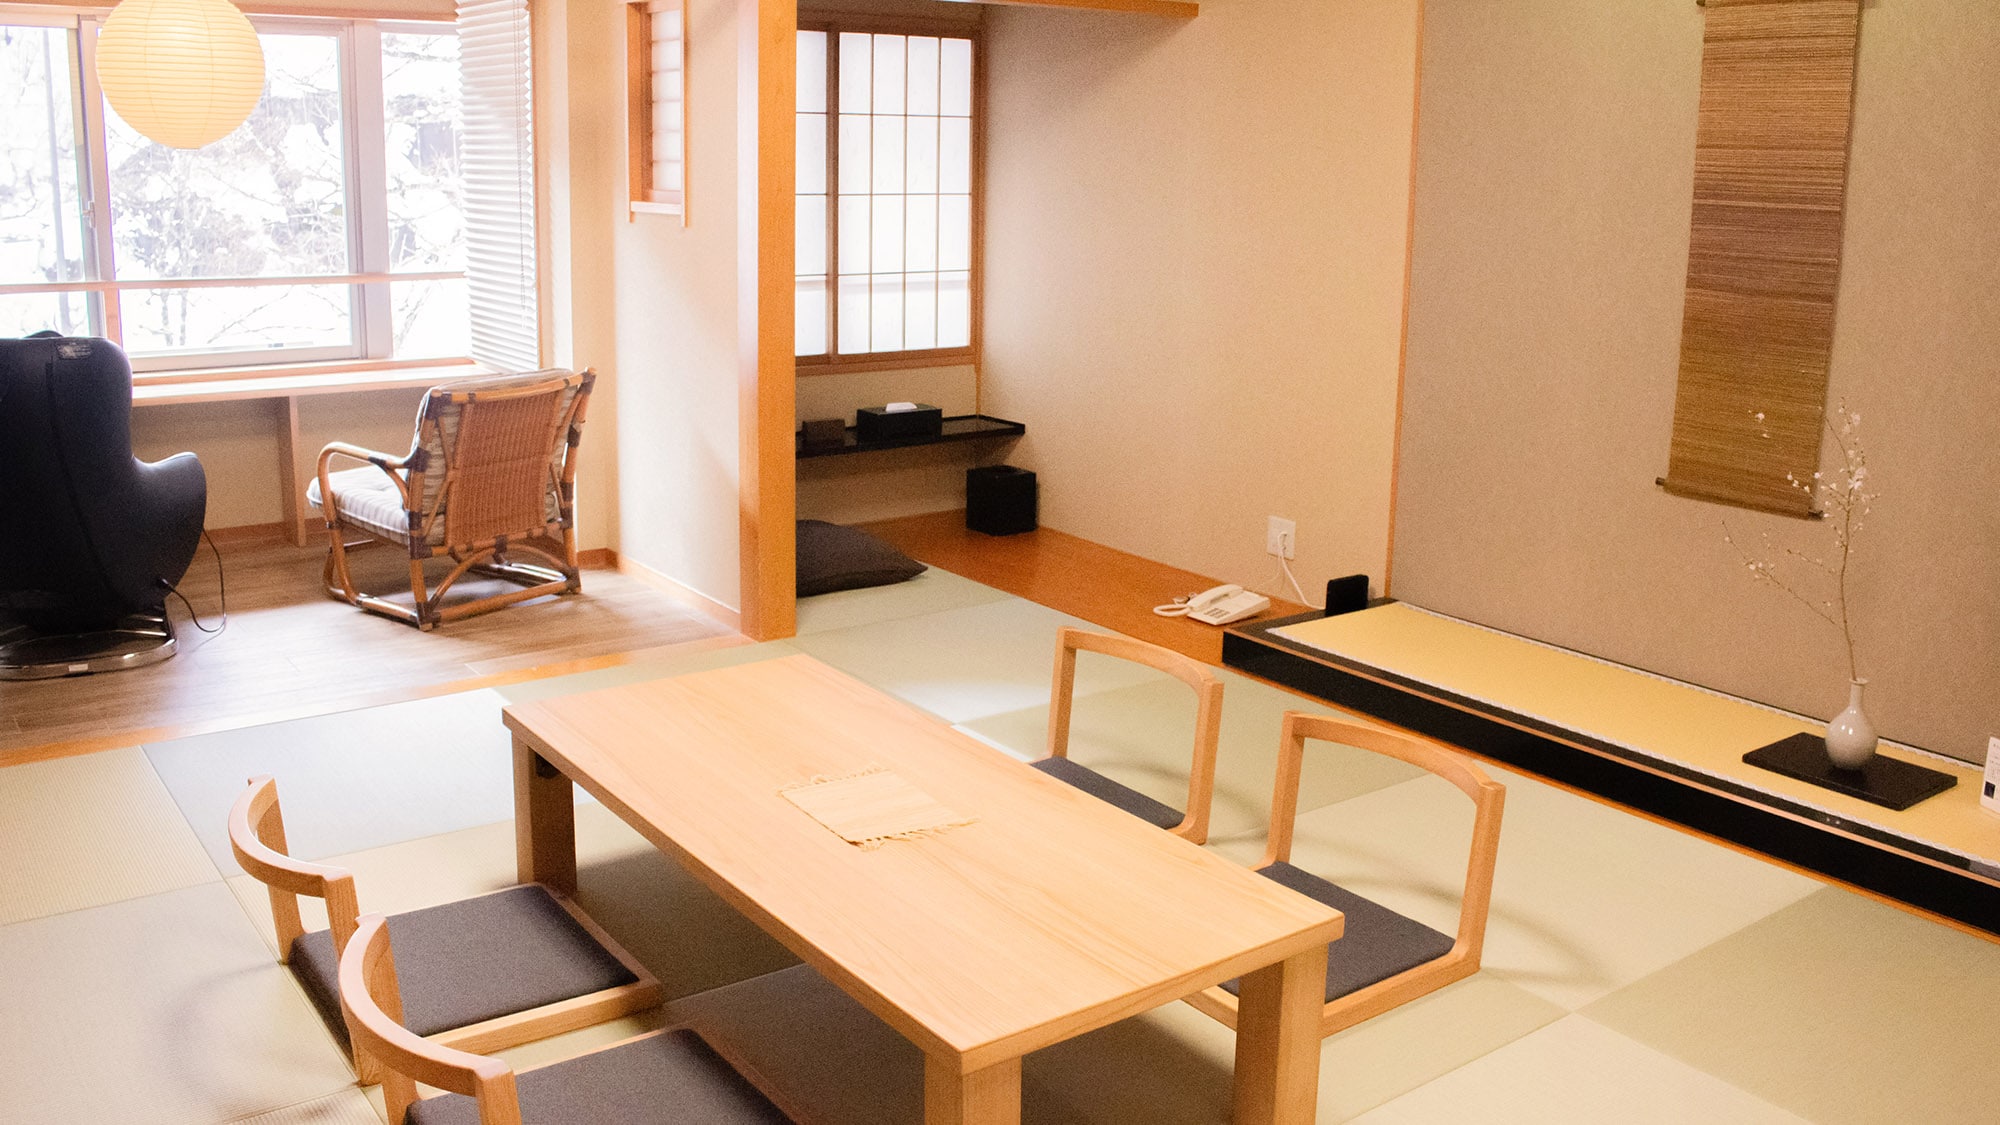 ・【2층 일본식 방】류큐 다다미의 느긋하게 보낼 수 있는 일본식 방. 최대 4명까지 숙박 가능